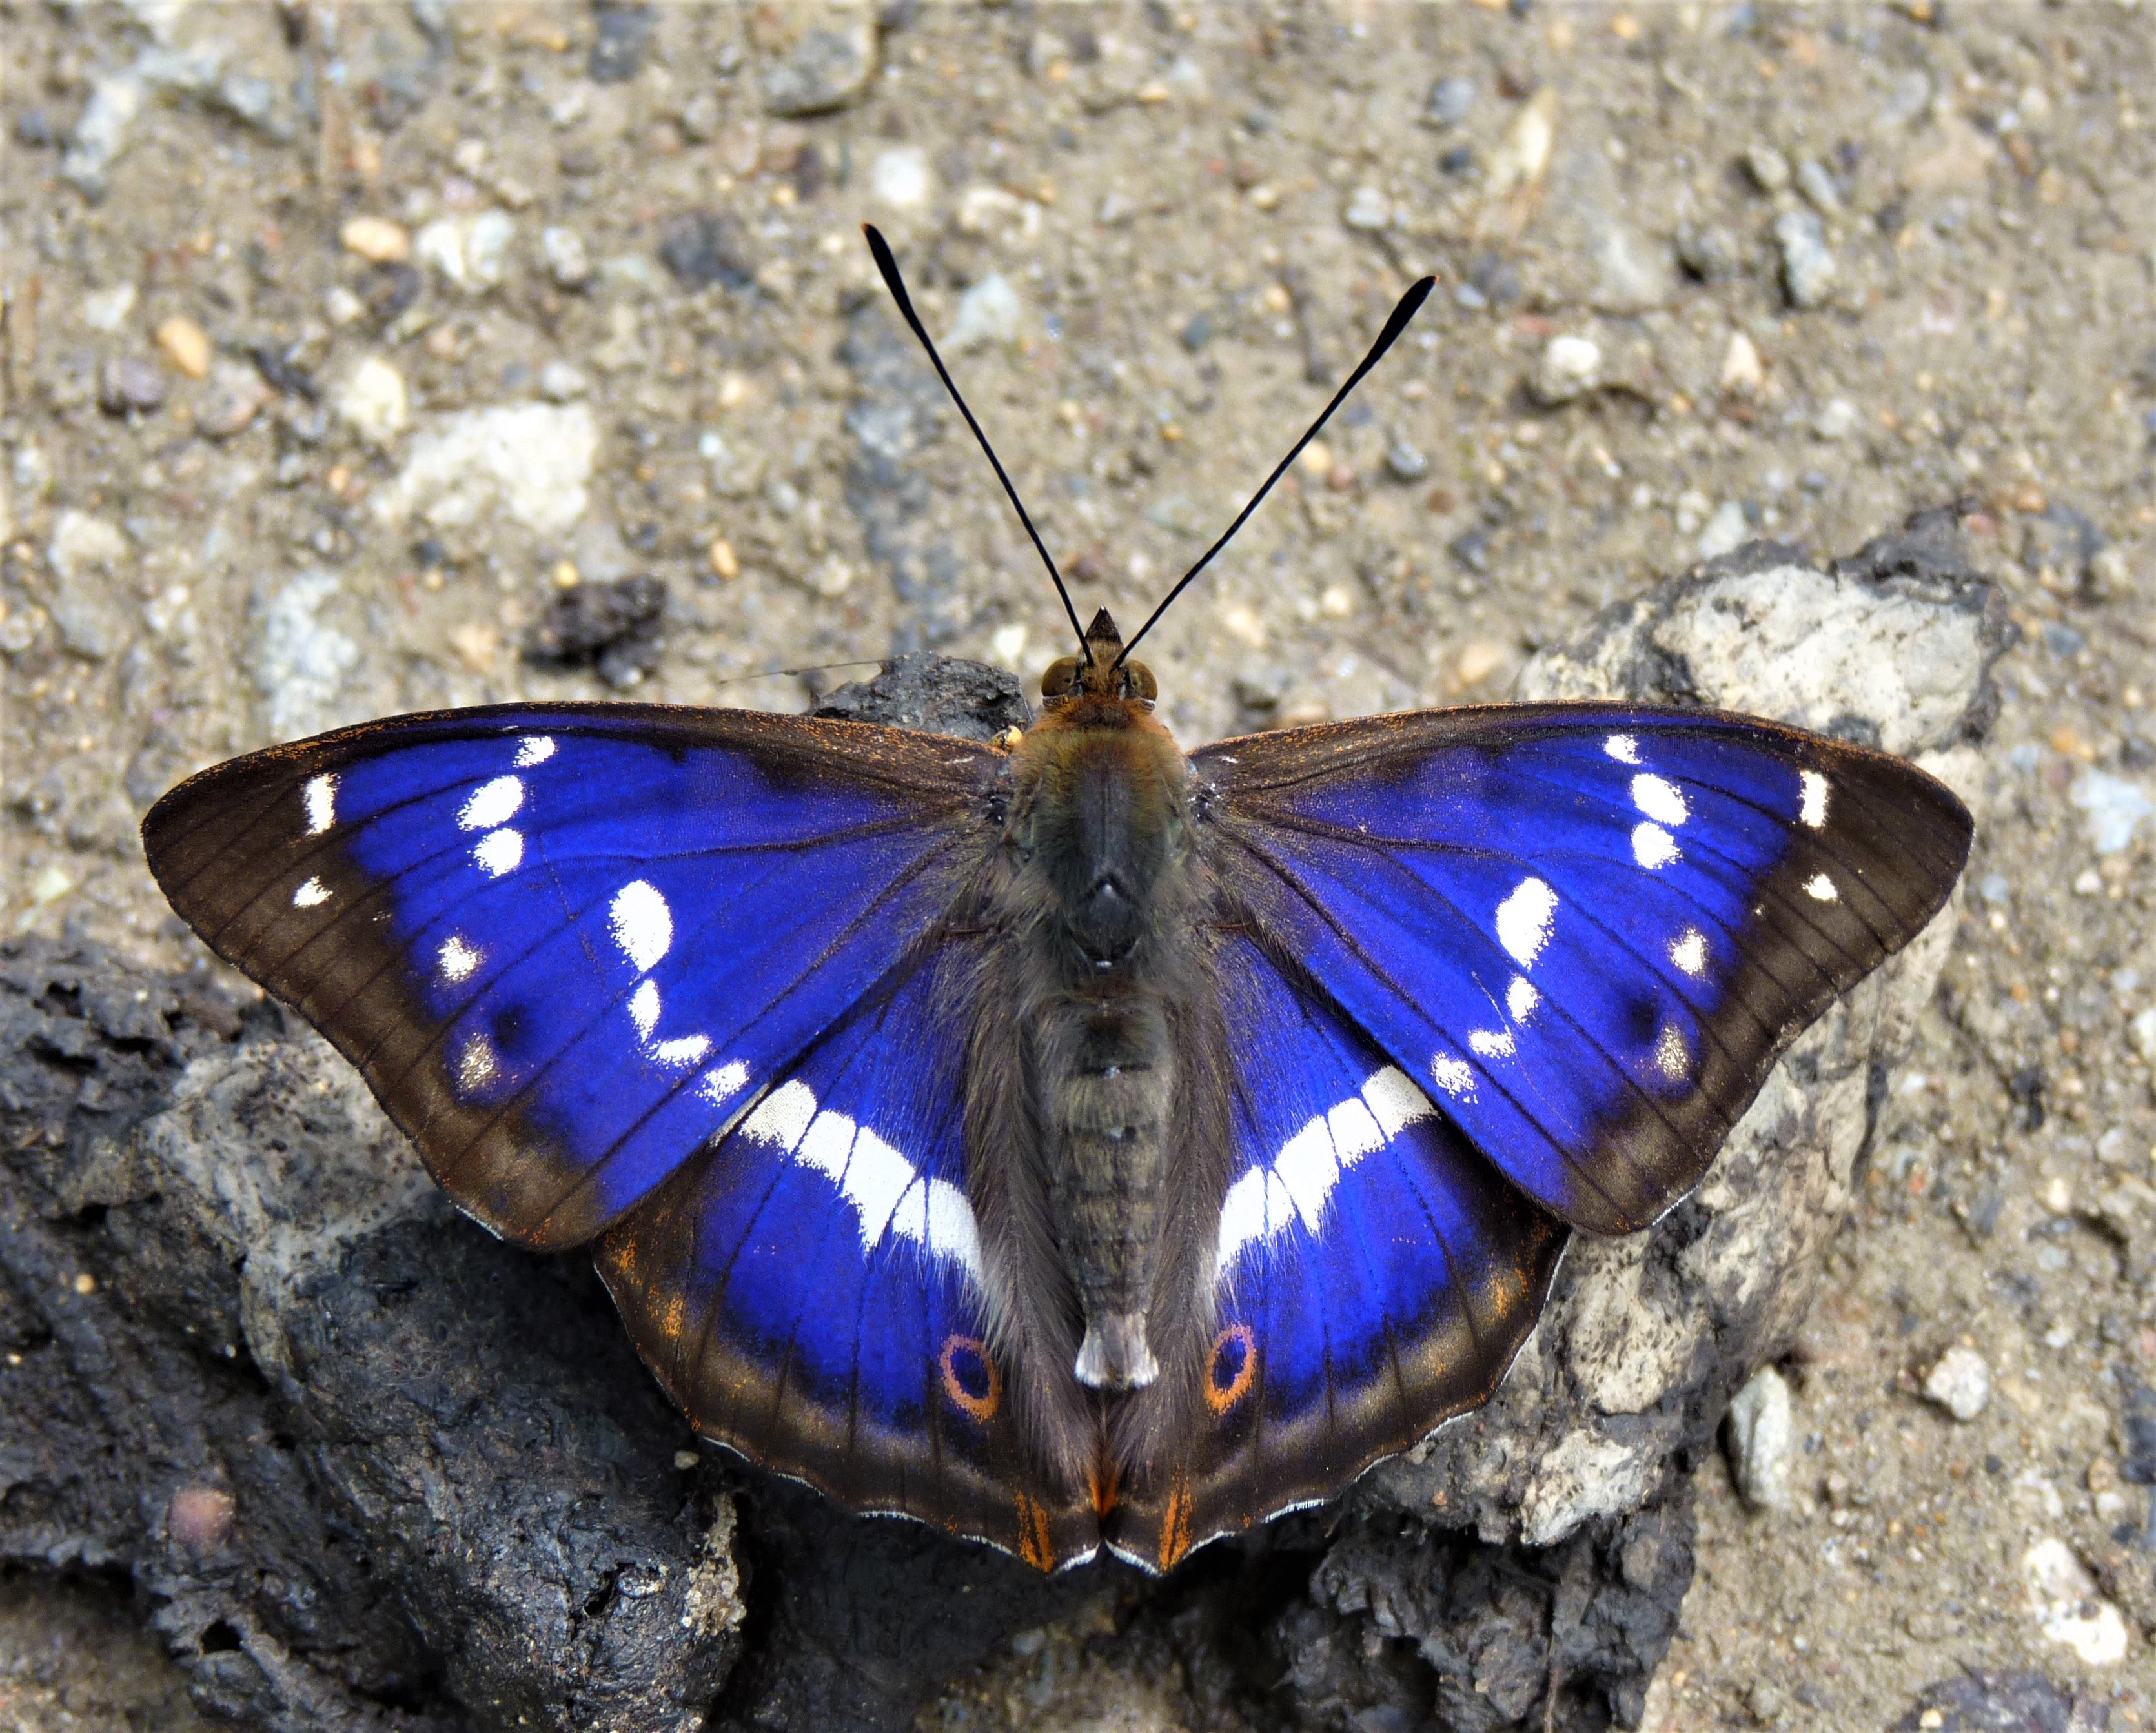 Male purple emperor butterfly